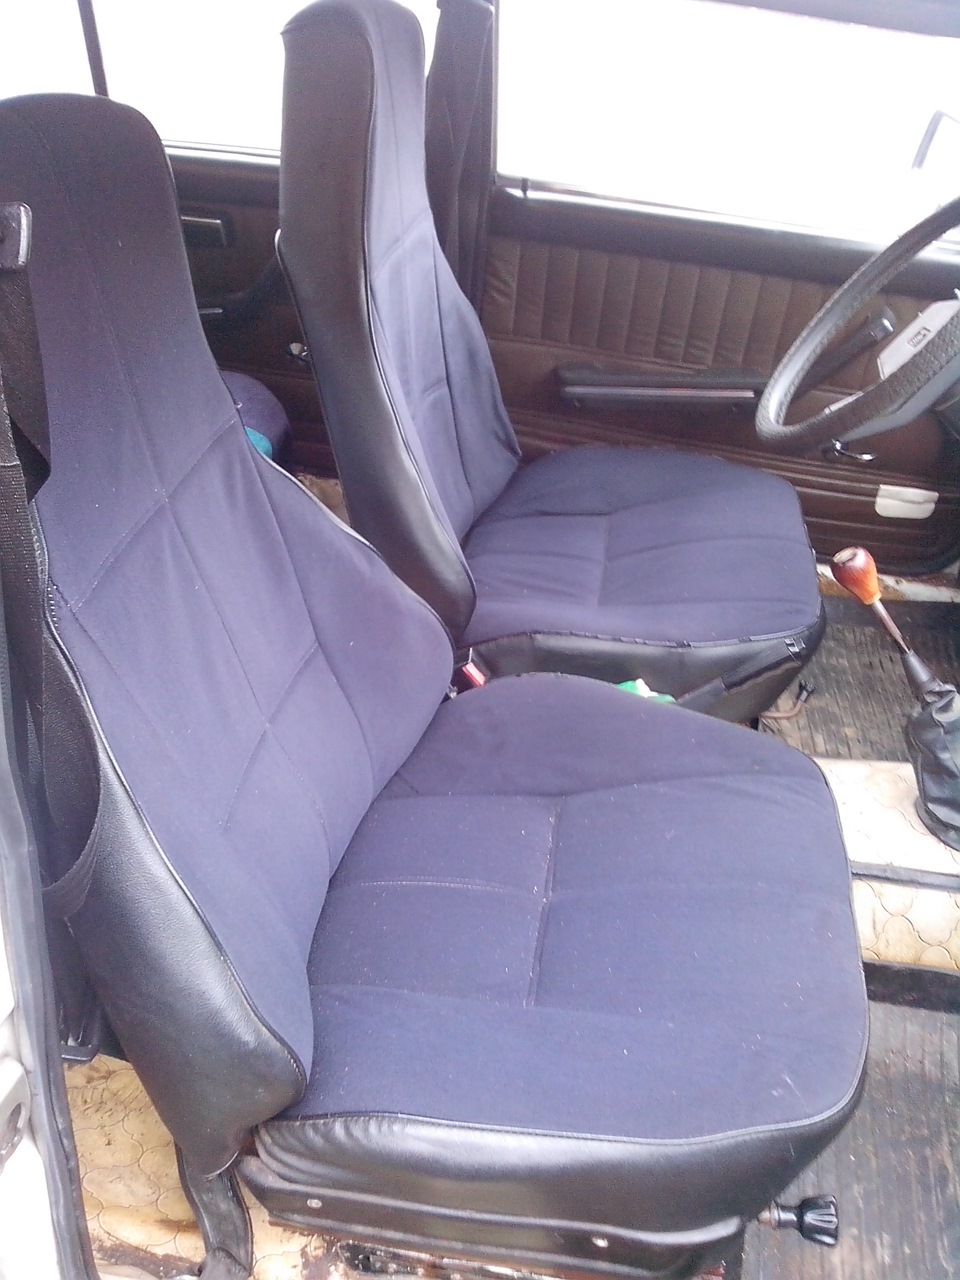 Купить передние сиденья на ваз 2107. Водительское сиденье ВАЗ 2107. Сиденья ВАЗ 2107 велюр. Переднее водительское сидение на ВАЗ 2107. Сиденья синие велюр ВАЗ 2107.